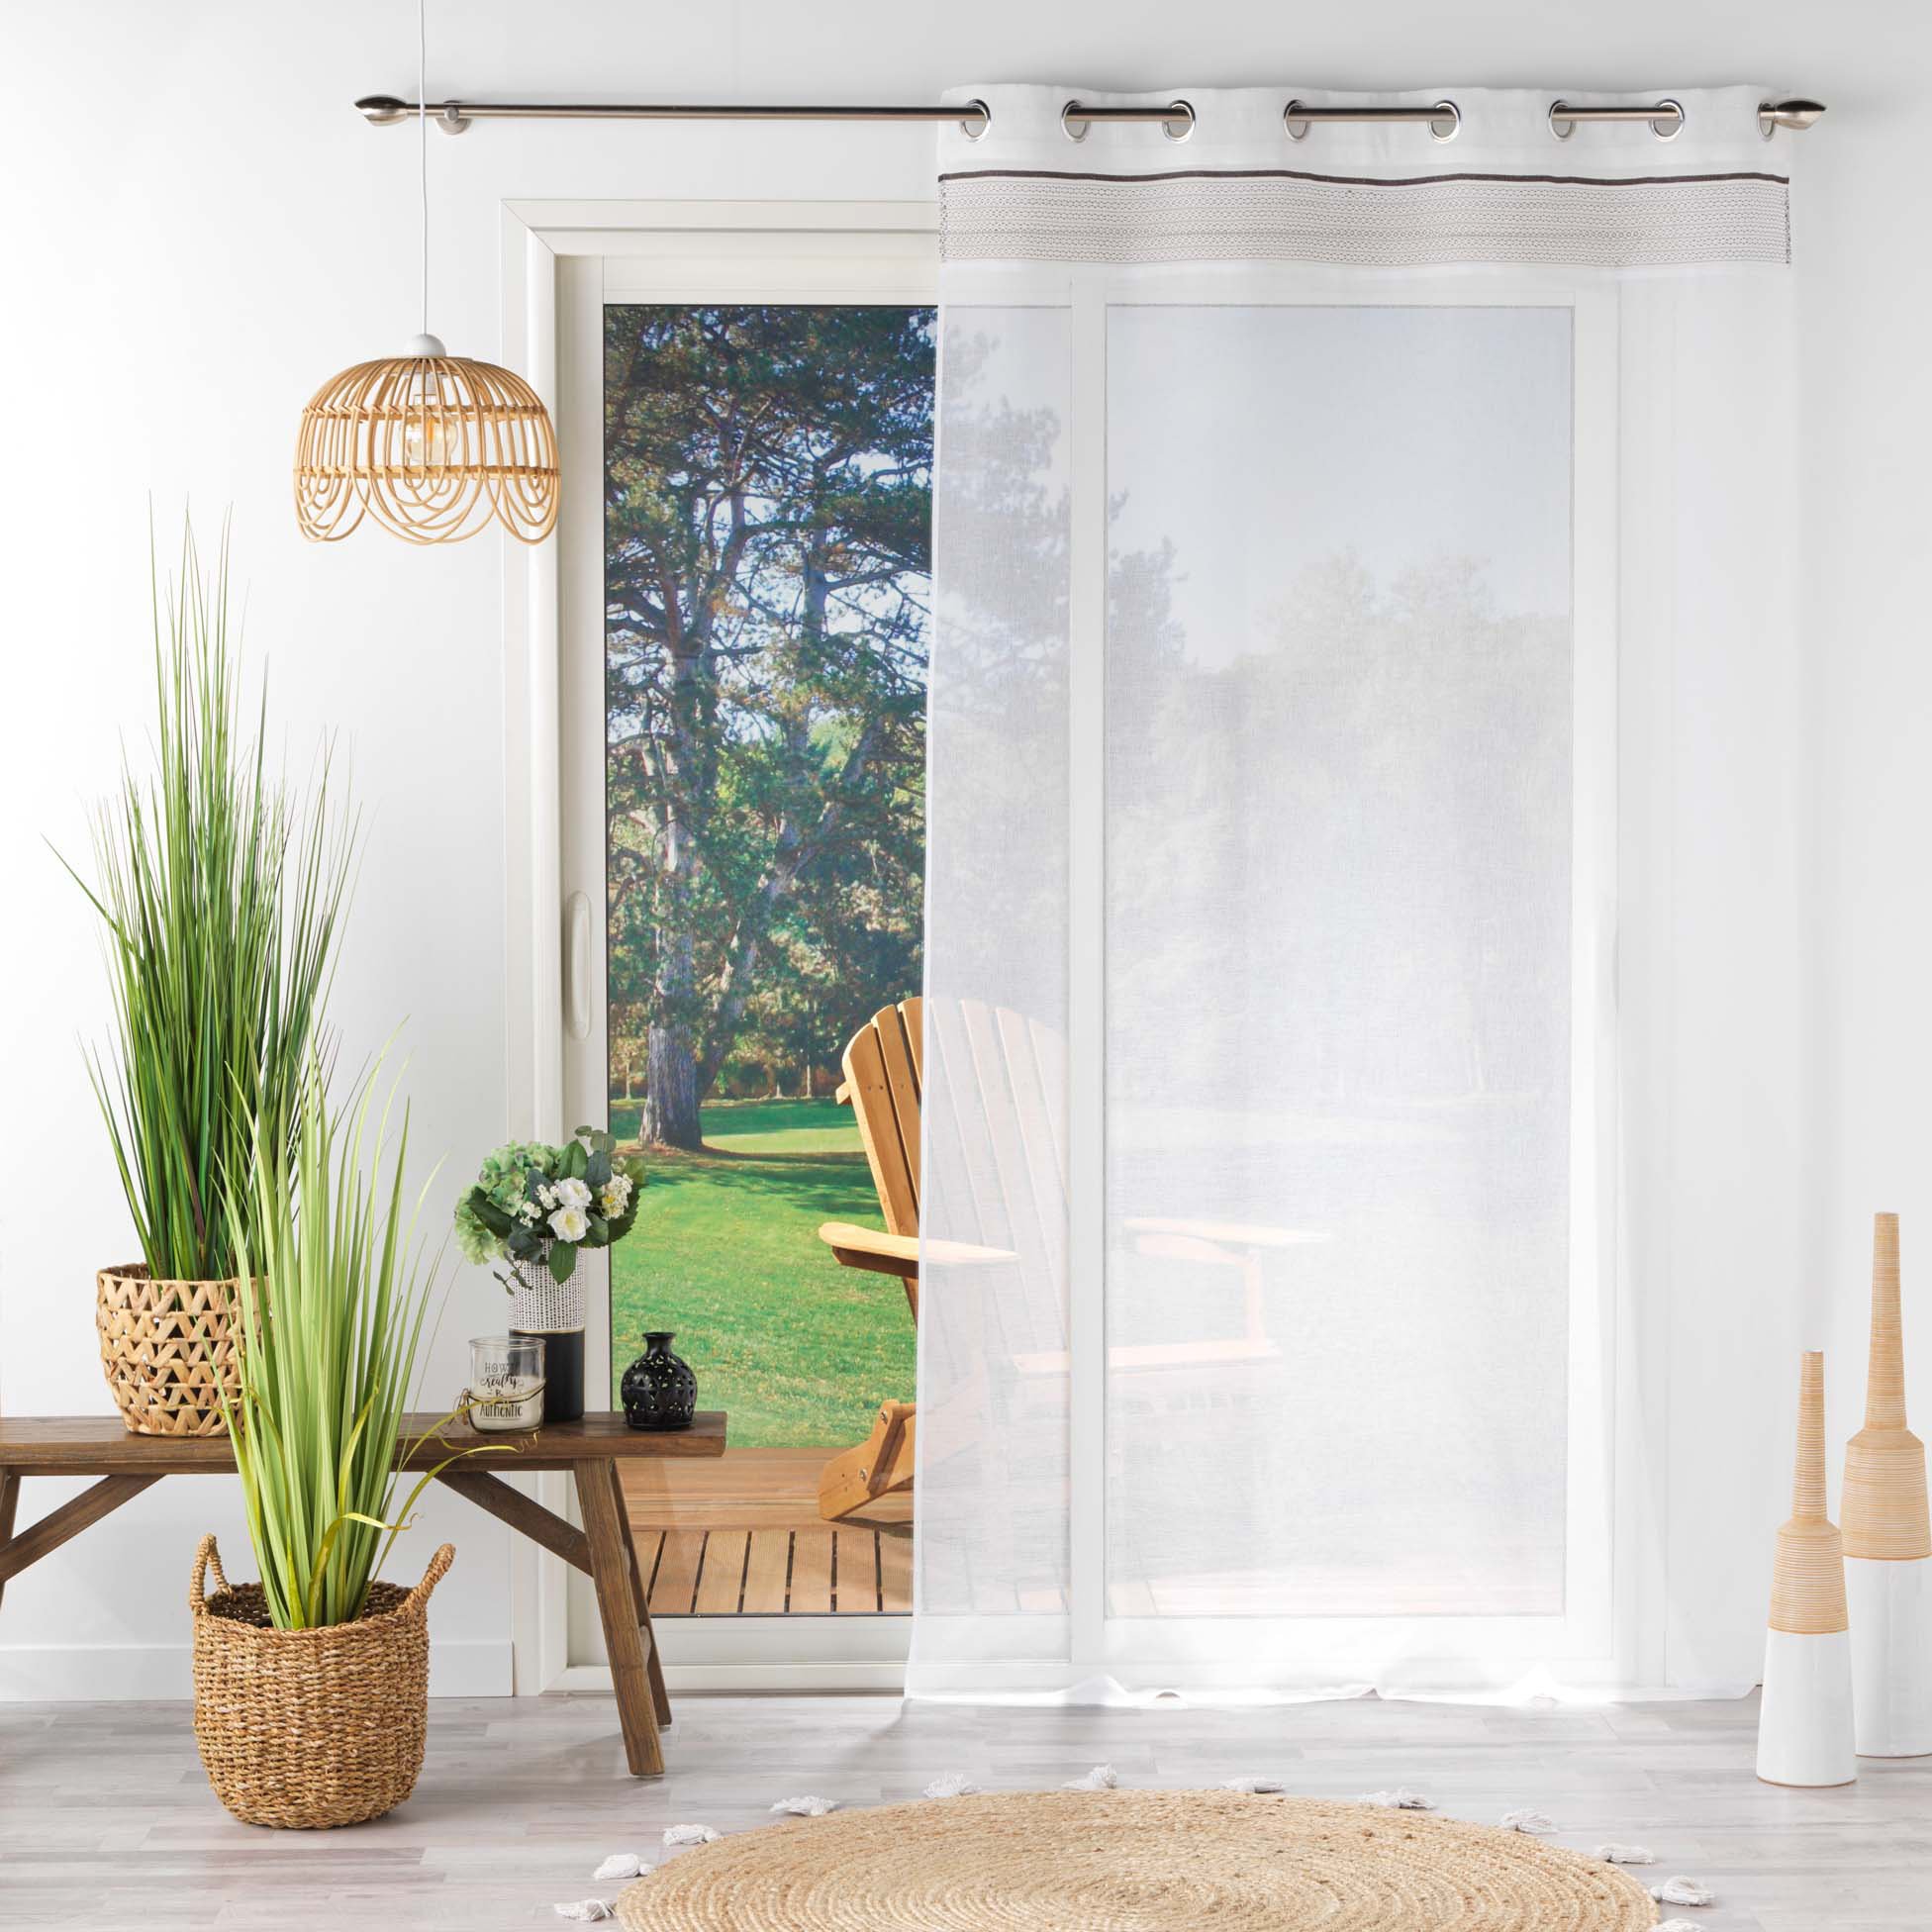 Visillo corto para ventana (60 x 90 cm) Candice Blanco - Cortina